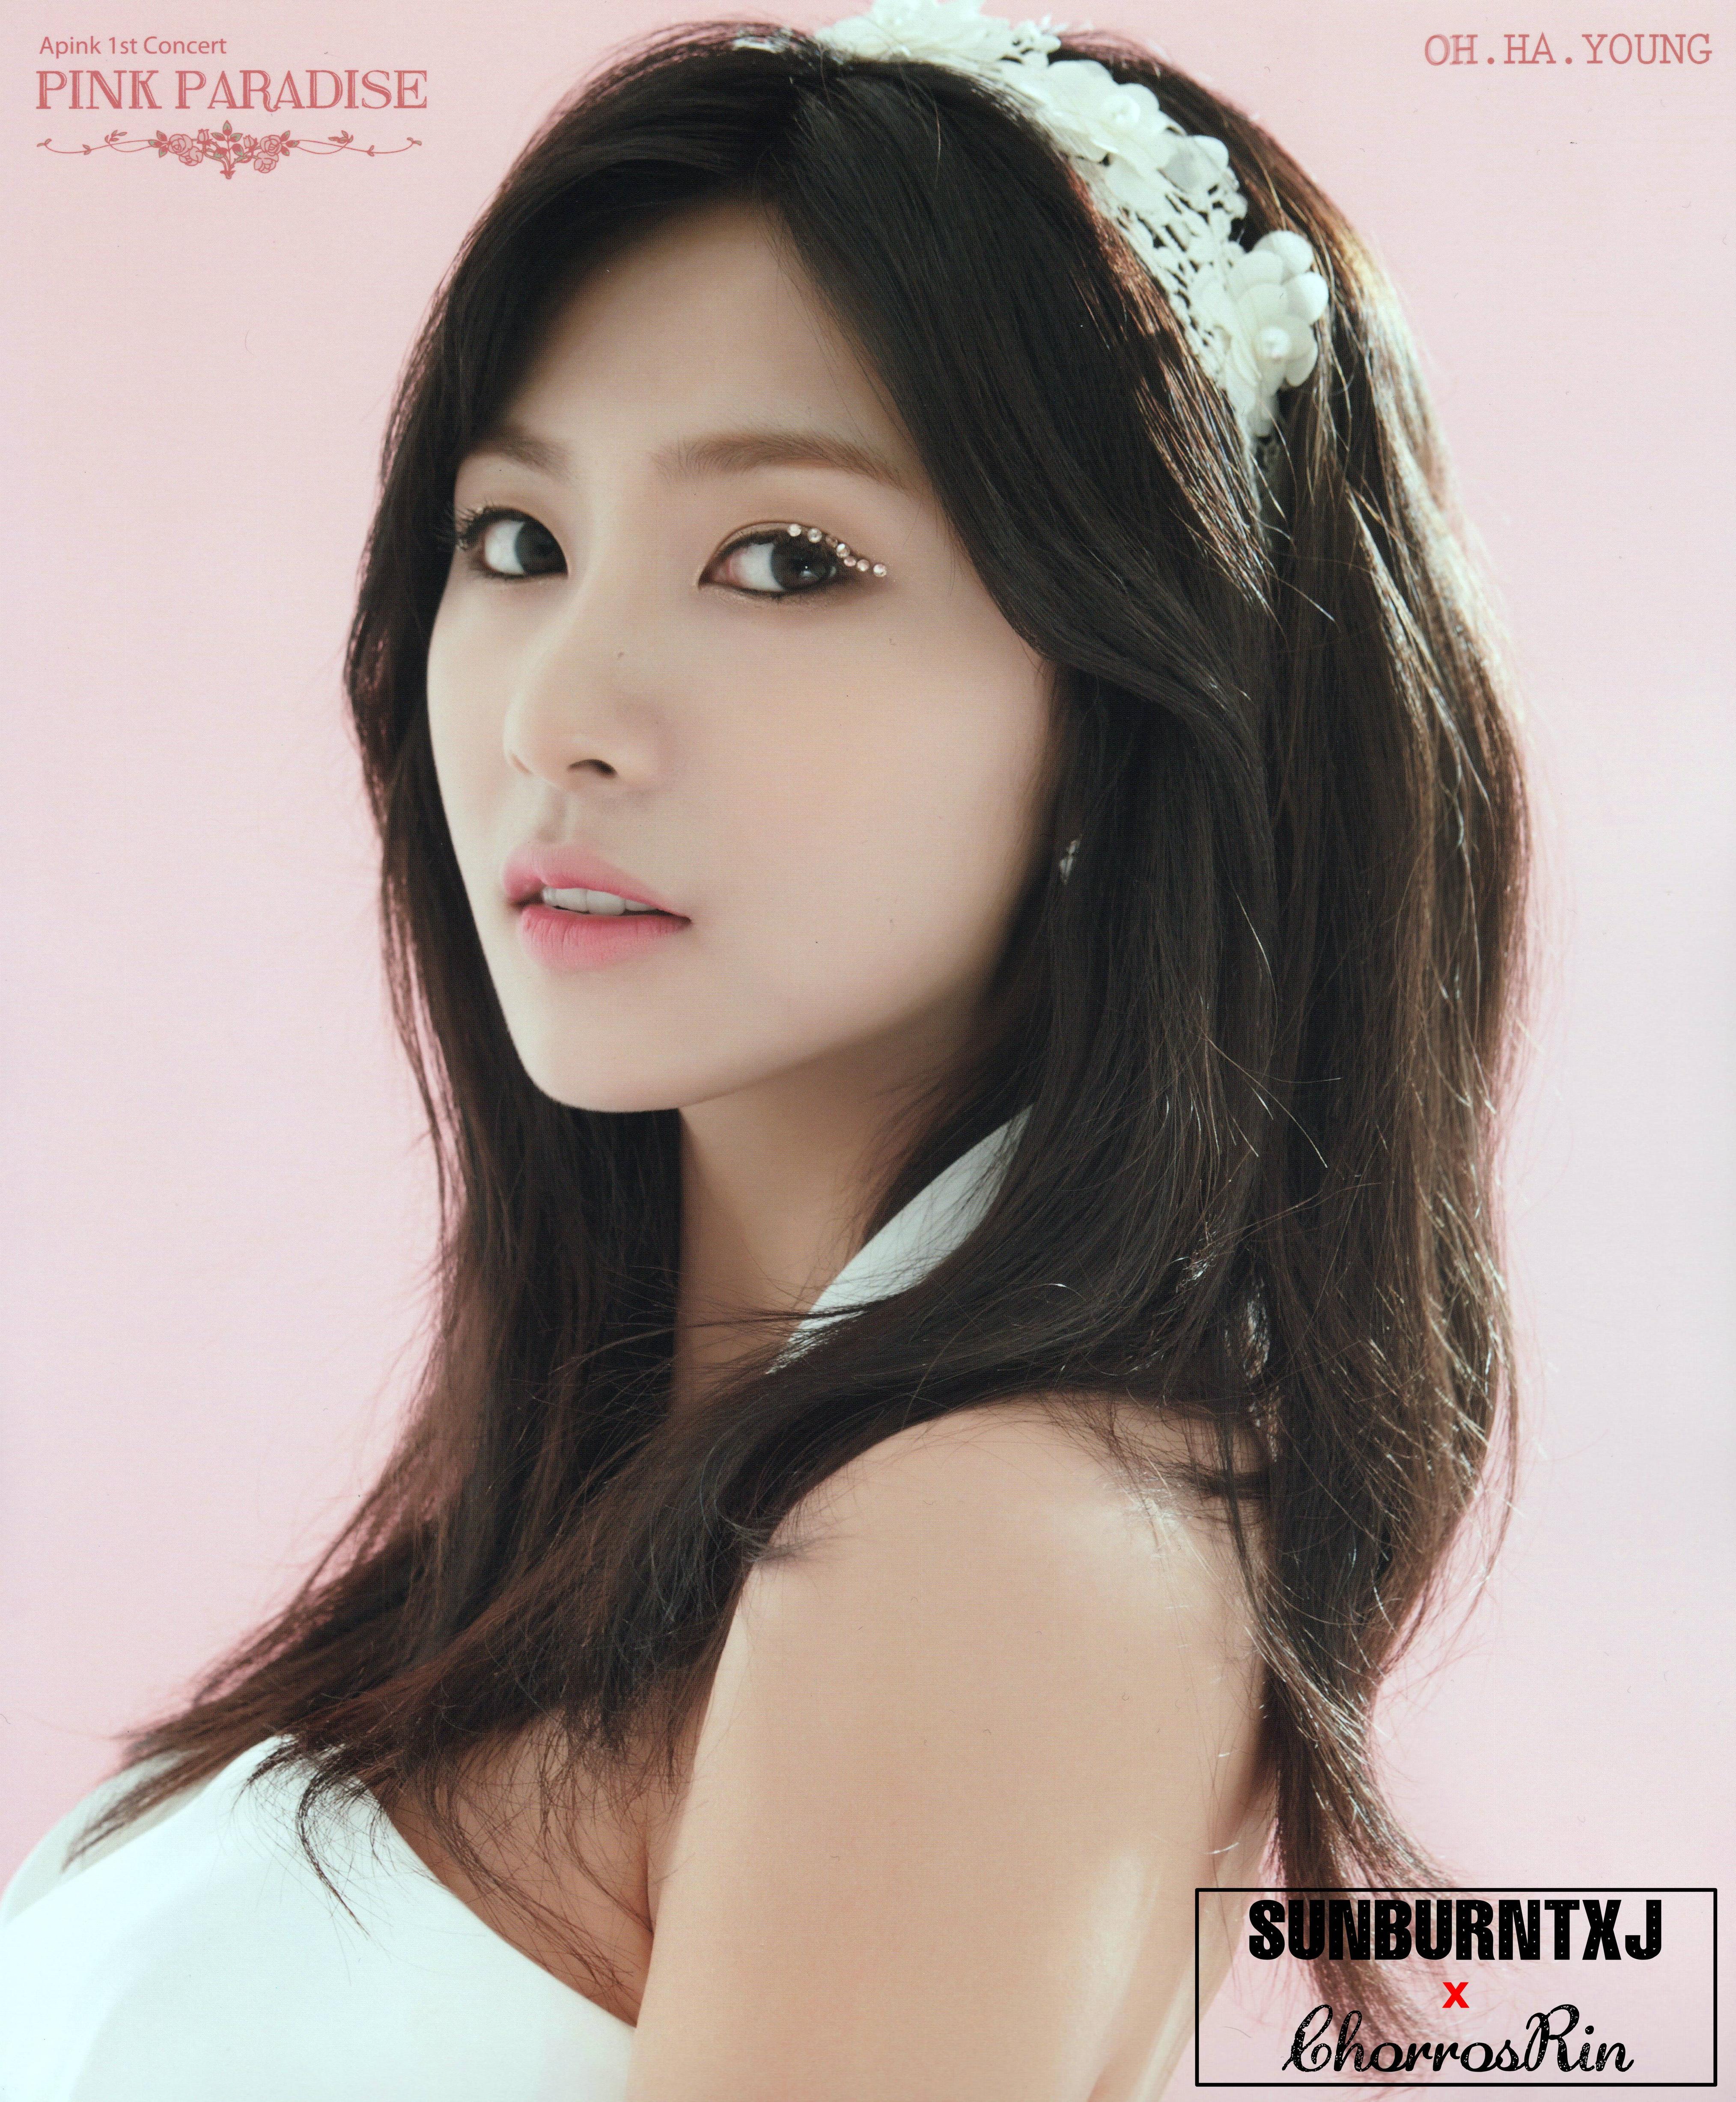 Oh Ha Young Korean Film Actors HD Wallpaper And Photo